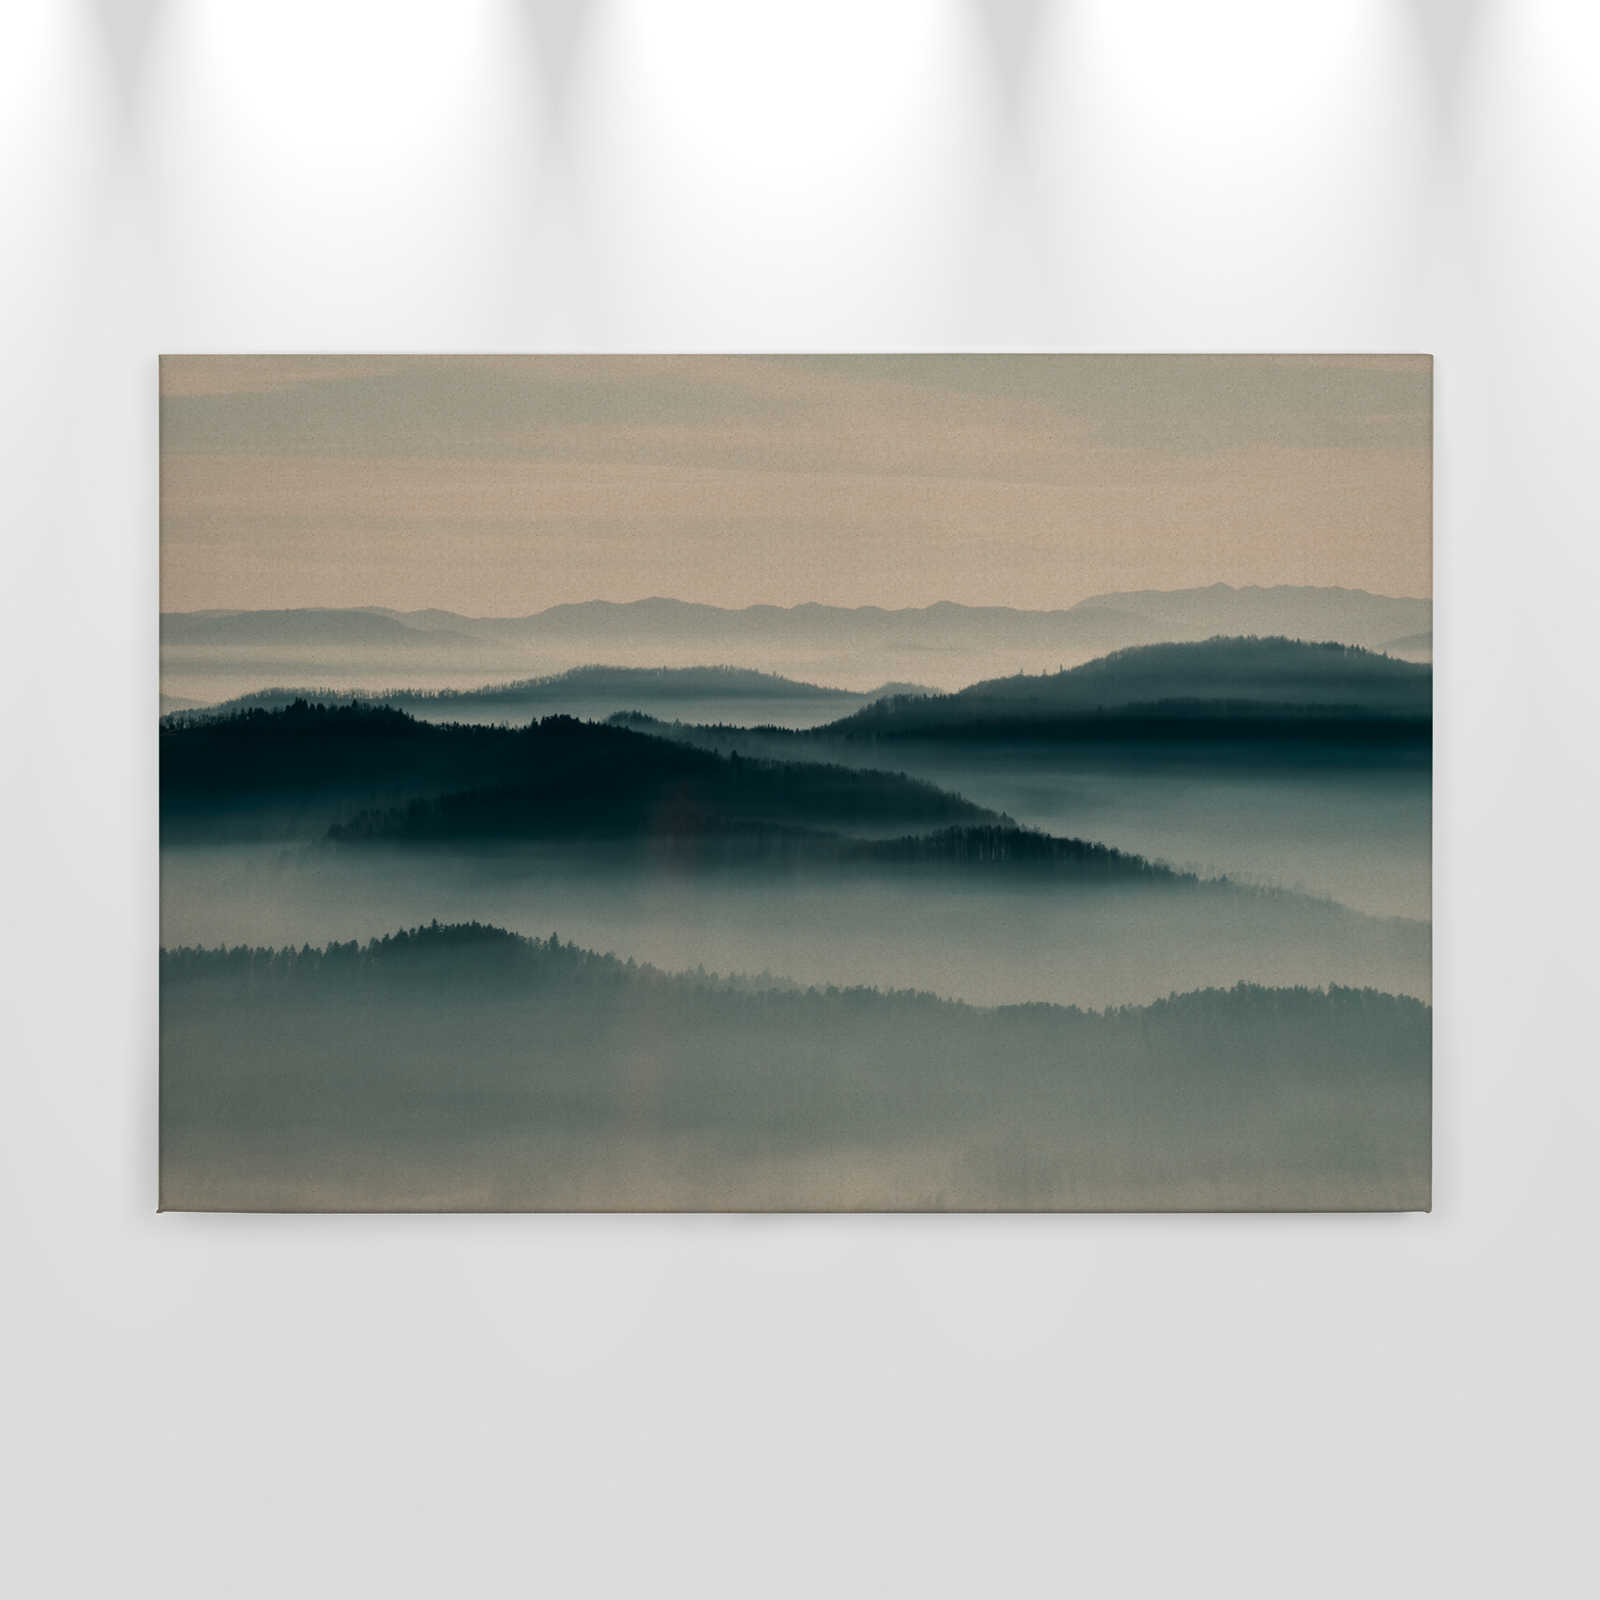             Horizon 1 - Quadro su tela con paesaggio di nebbia, natura Sky Line in struttura di cartone - 0,90 m x 0,60 m
        